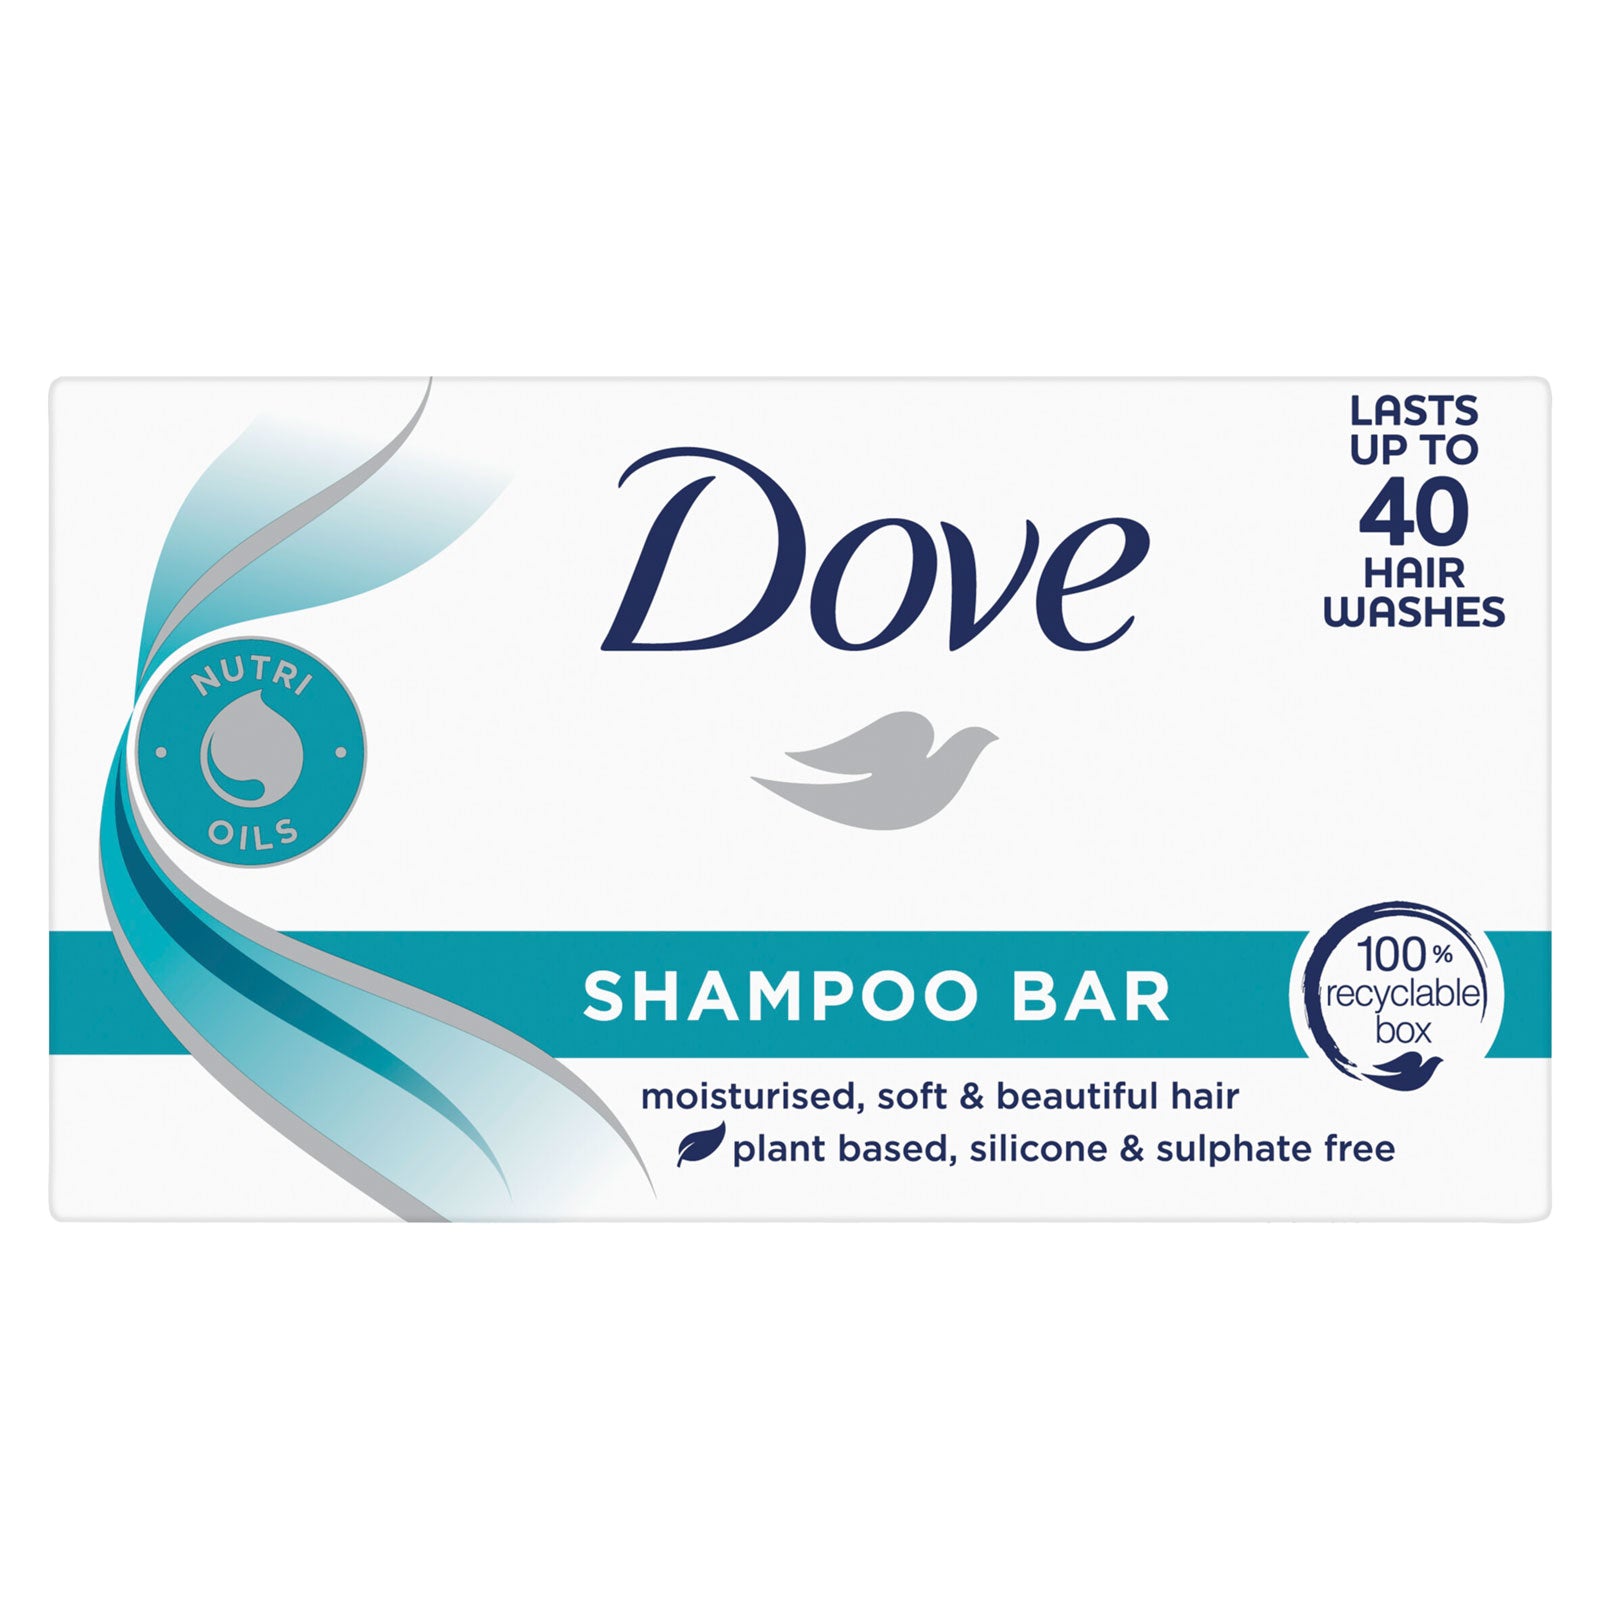 Dove Shampoo Bar Last Upto 40 Hair Washes